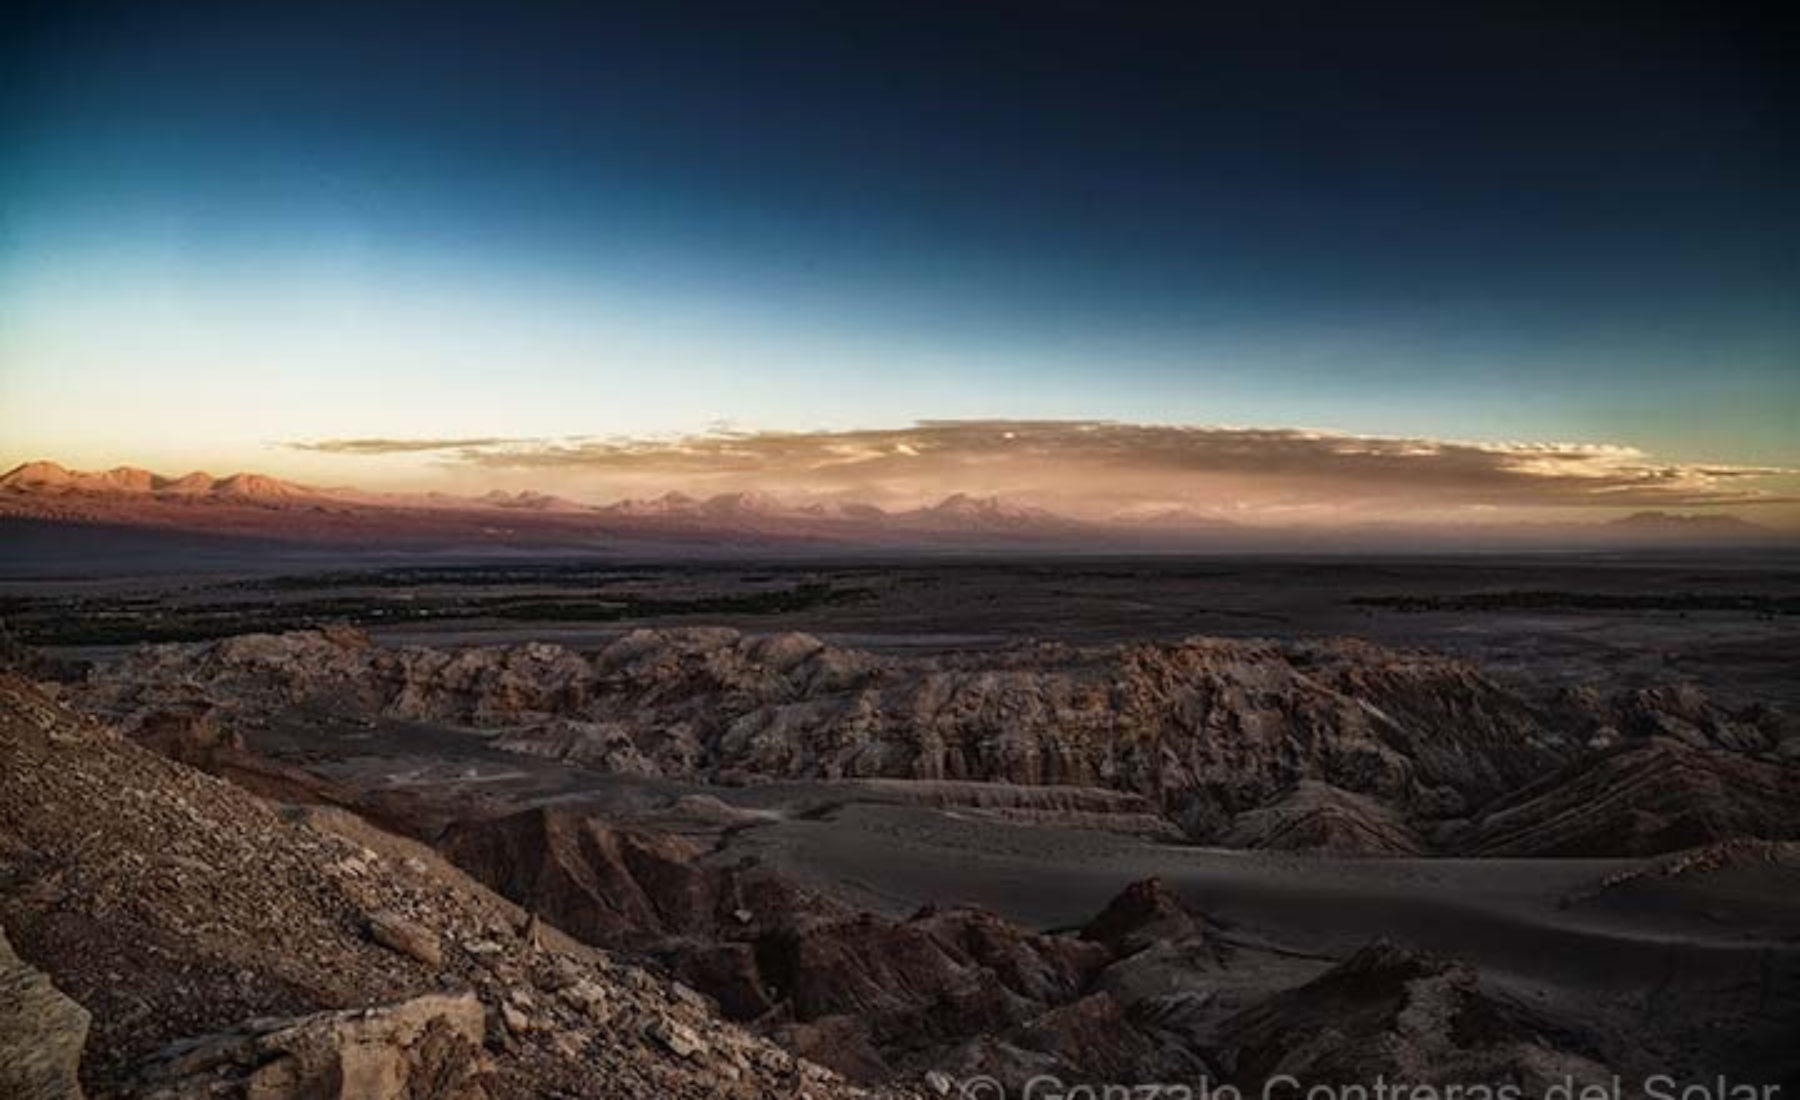 Desert and clouds at Atacama